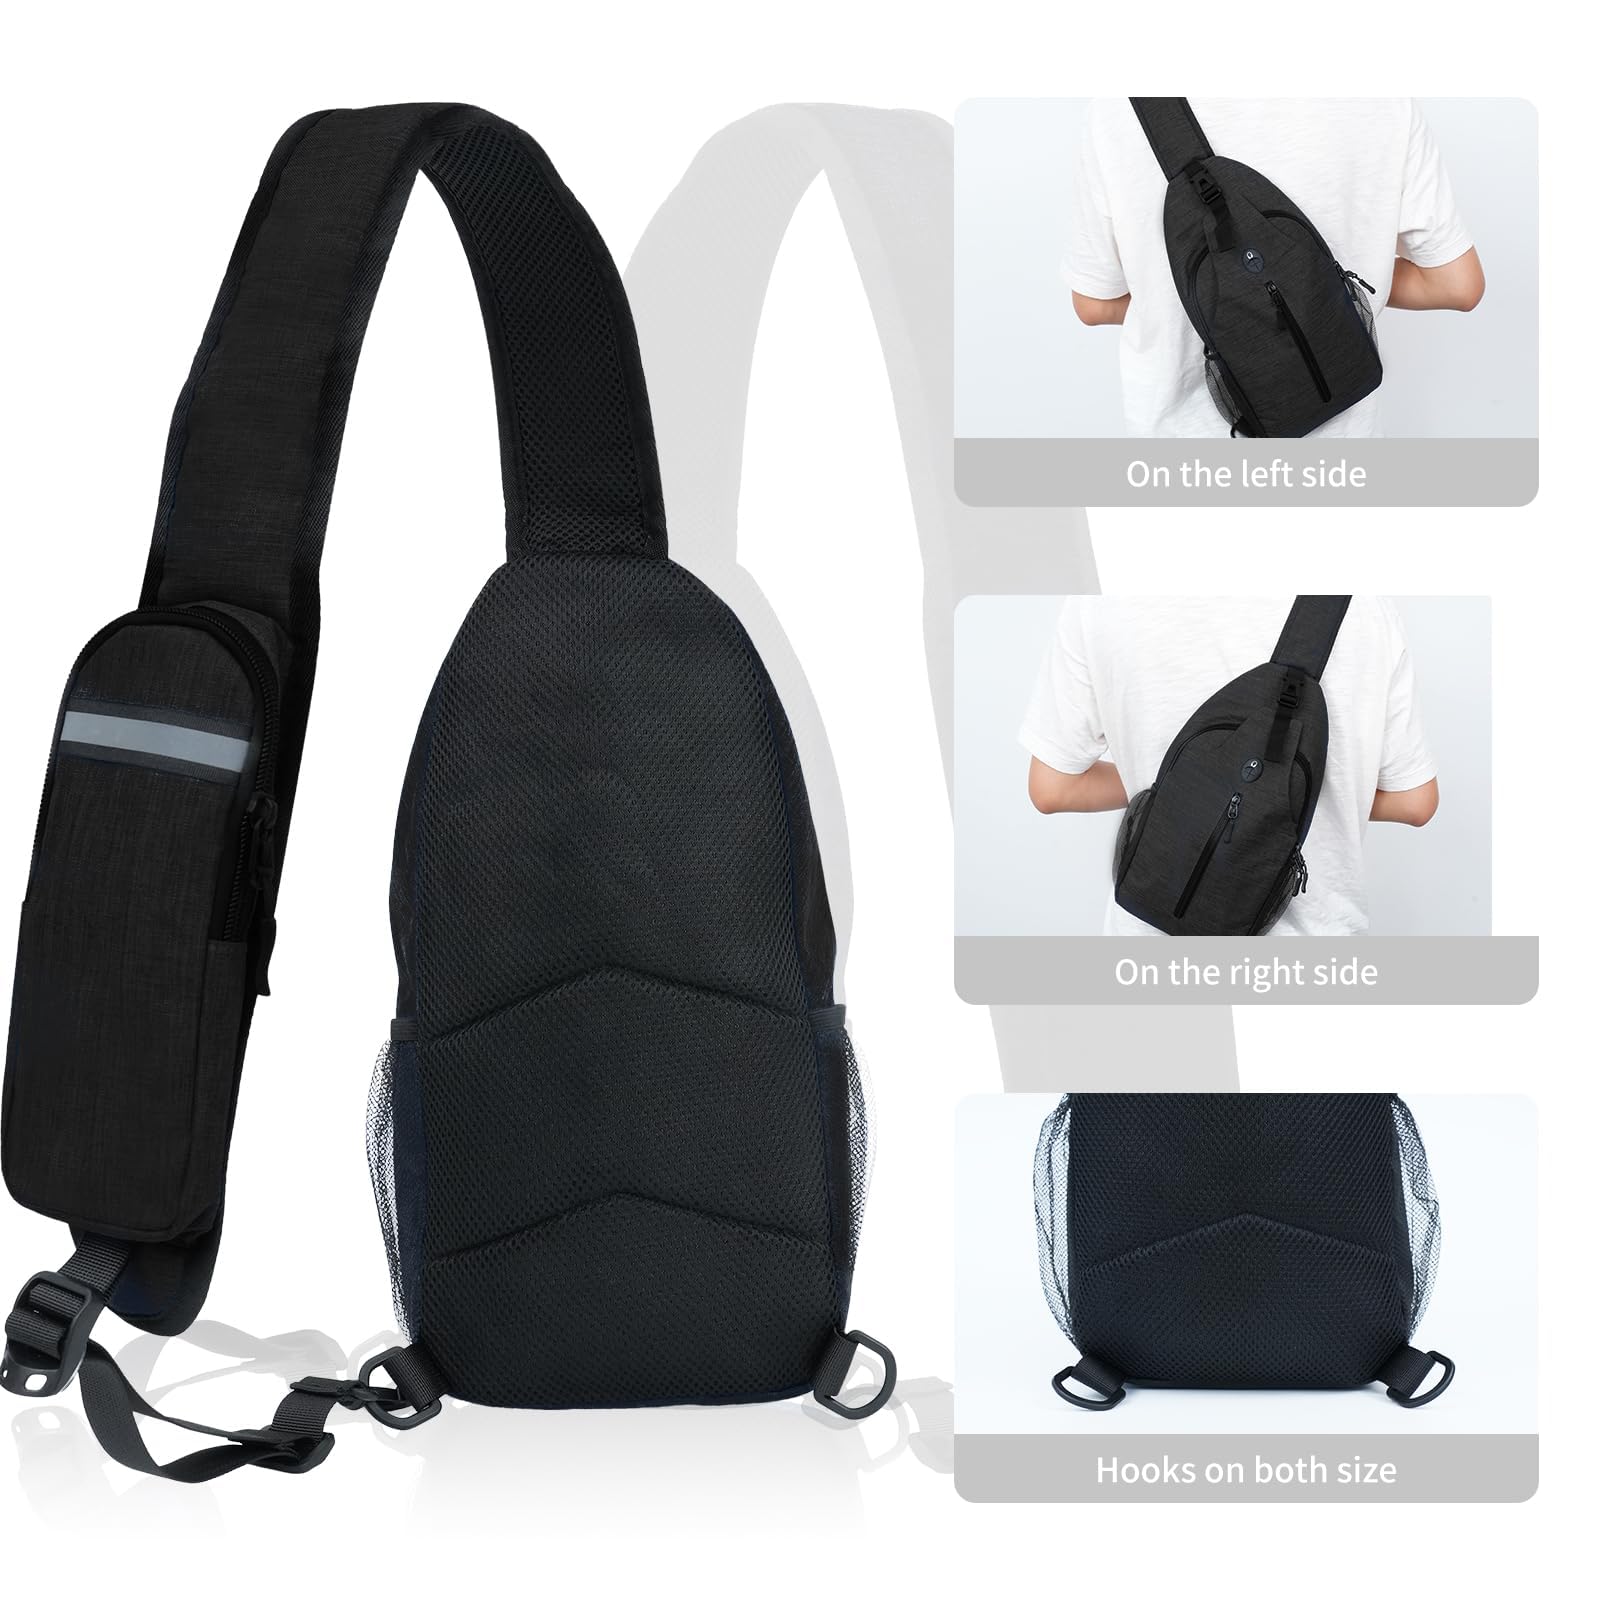 Sling-Bag Crossbody-Bag Women-Men Backpack-Daypack - Hiking Chest Travel with Water Bottle Pocket Portable Hiking Daypacks for Women Black